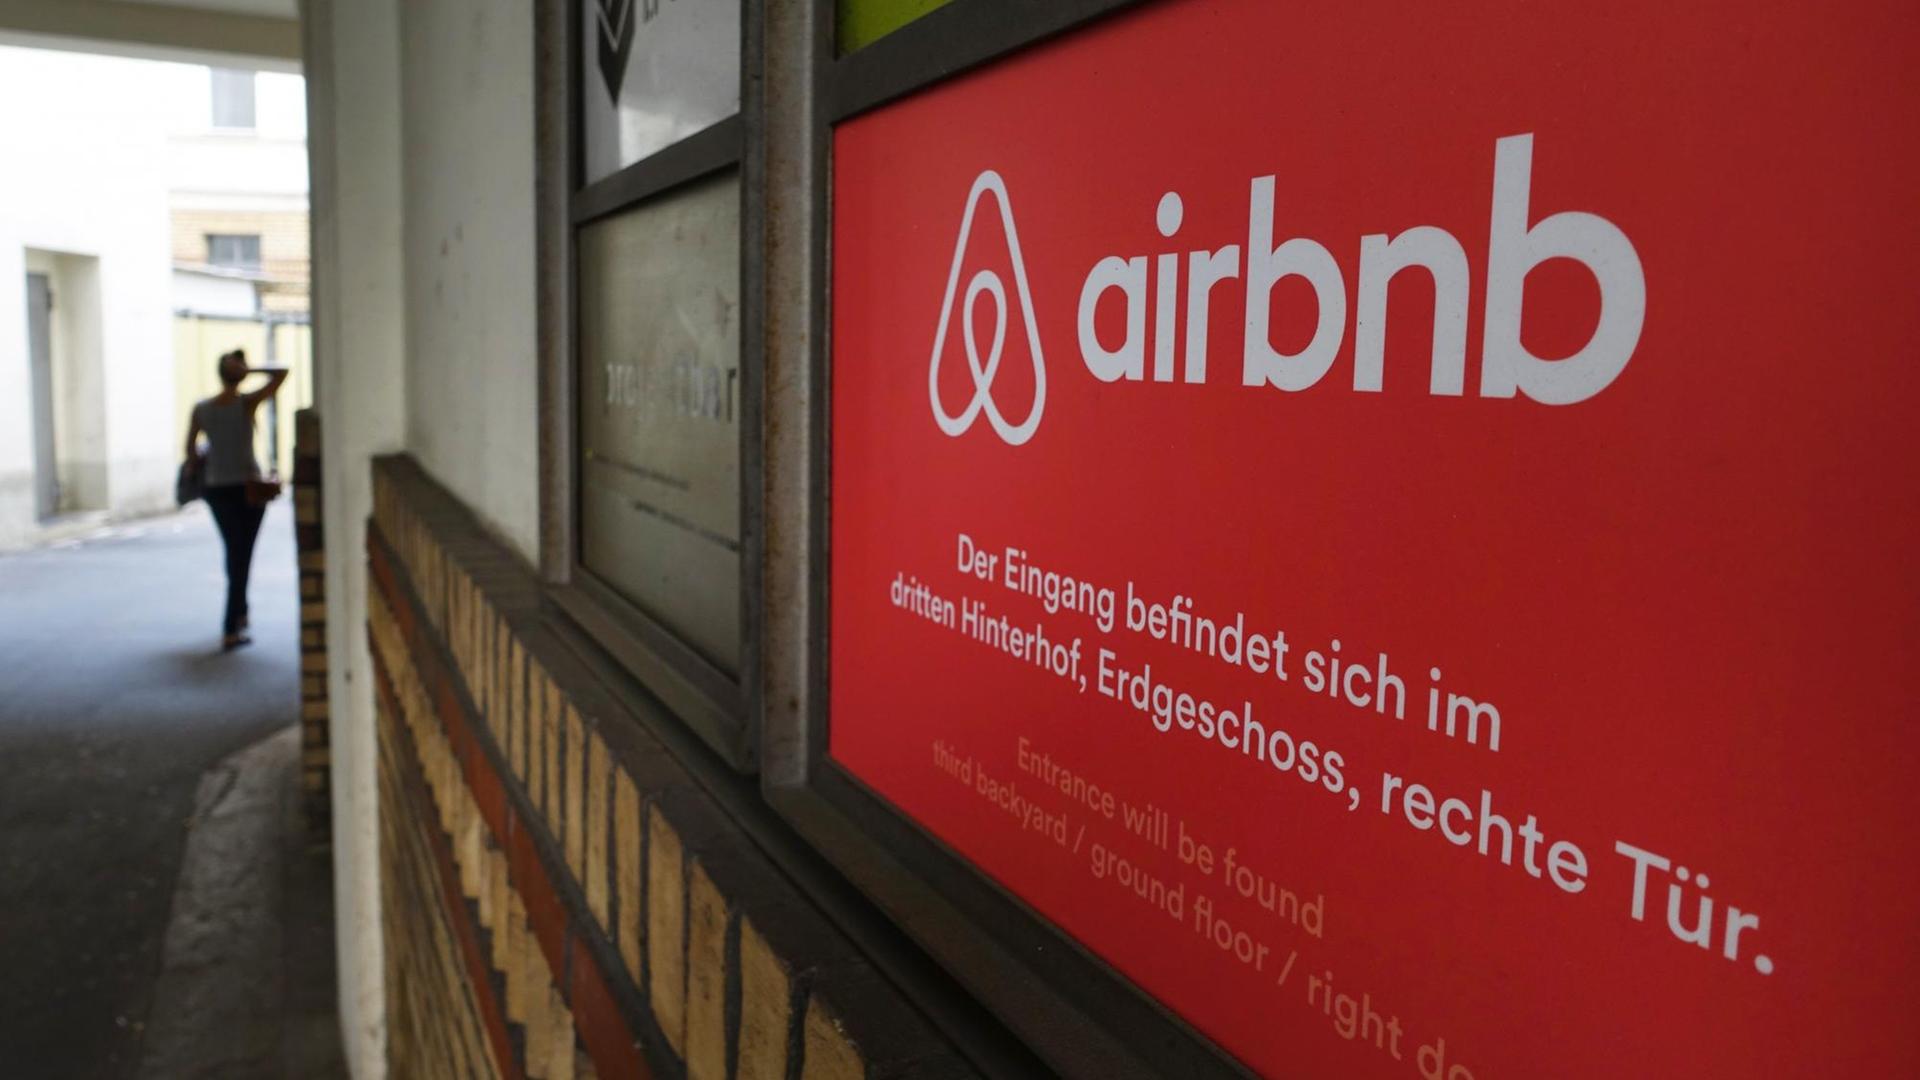 Das Logo vom Onlineübernachtungsdienst Airbnb im Eingang Brunnenstraße 196 am Rosenthaler Platz, fotografiert am 19.08.2015 in Berlin.